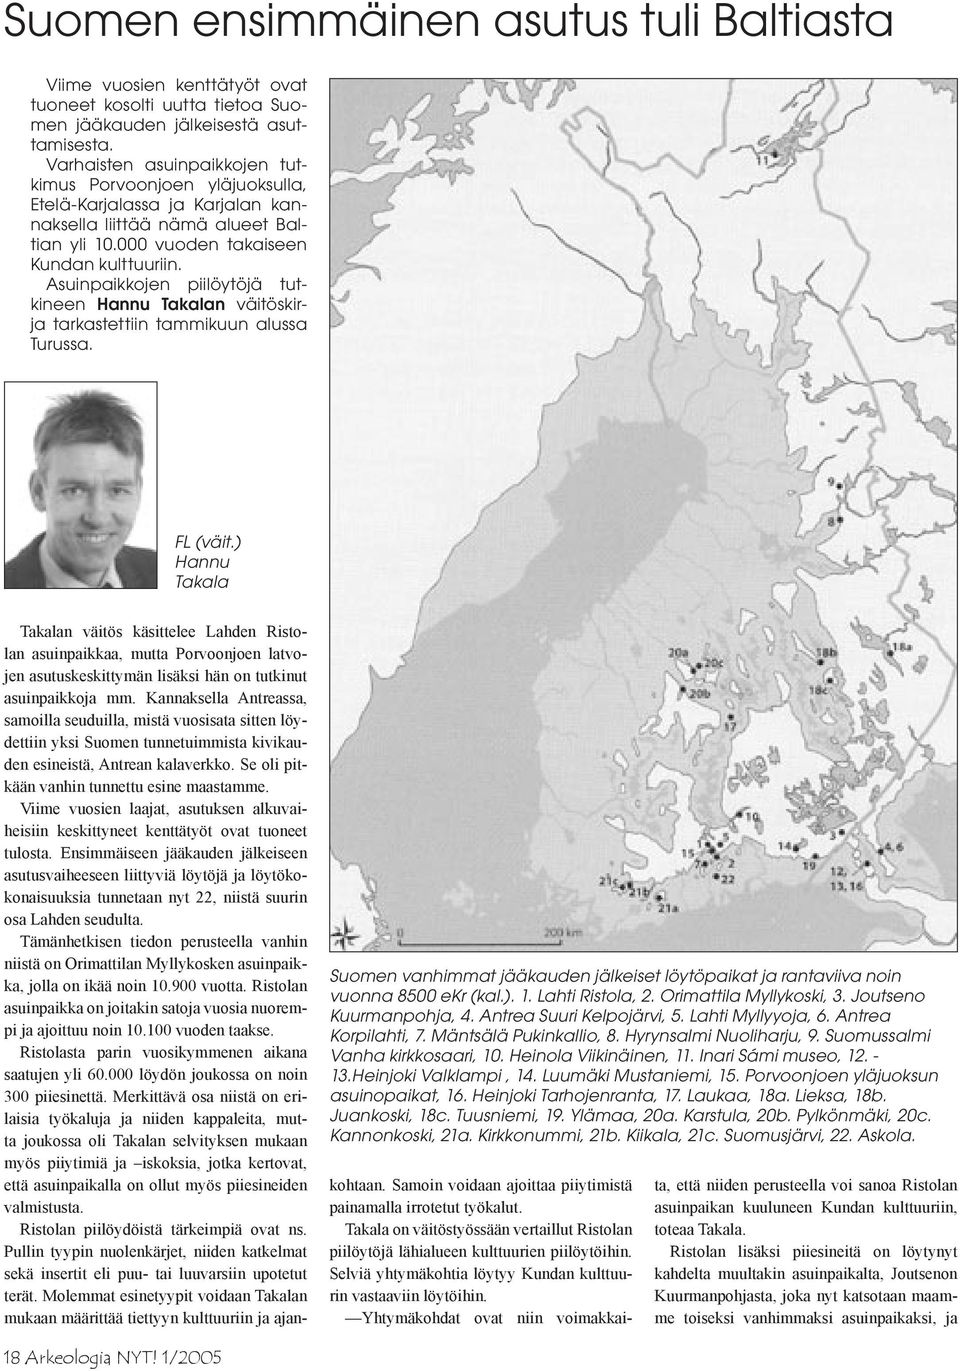 Asuinpaikkojen piilöytöjä tutkineen Hannu Takalan väitöskirja tarkastettiin tammikuun alussa Turussa. FL (väit.